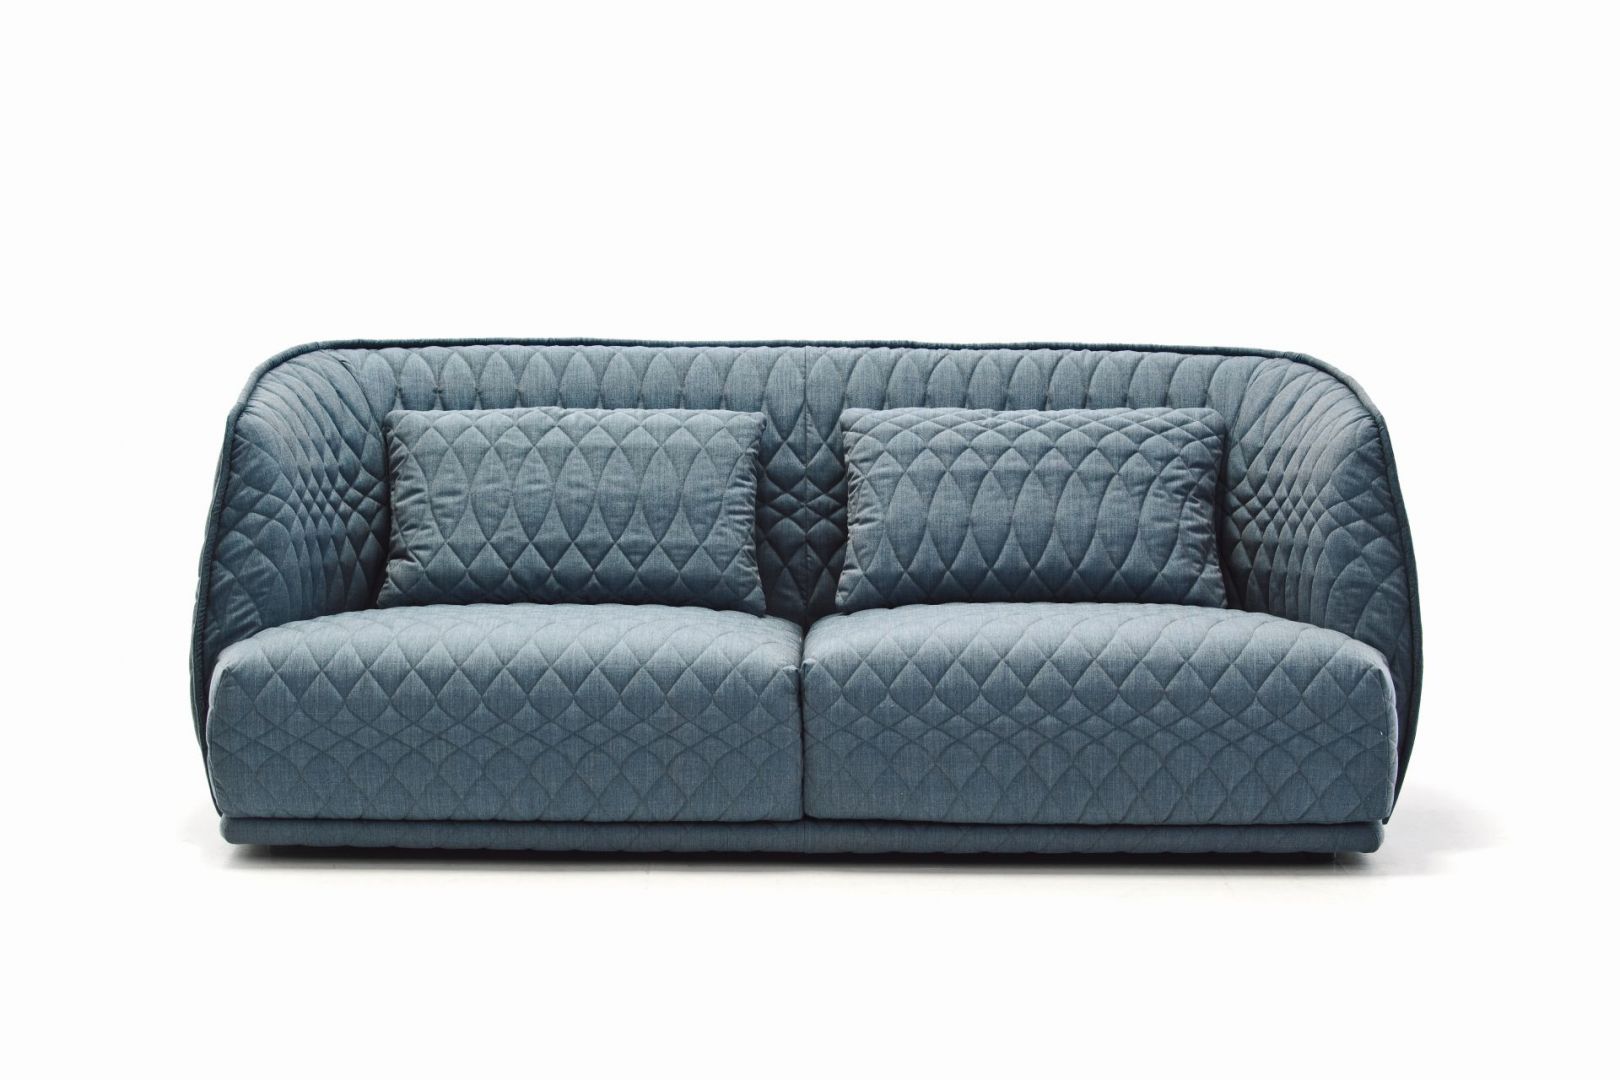 Sofa Redondo ma nietypową, zachwycająca tapicerkę i kształt, który doskonale pasuje do nowoczesnych wnętrz. Fot. Fabryka Wnętrz